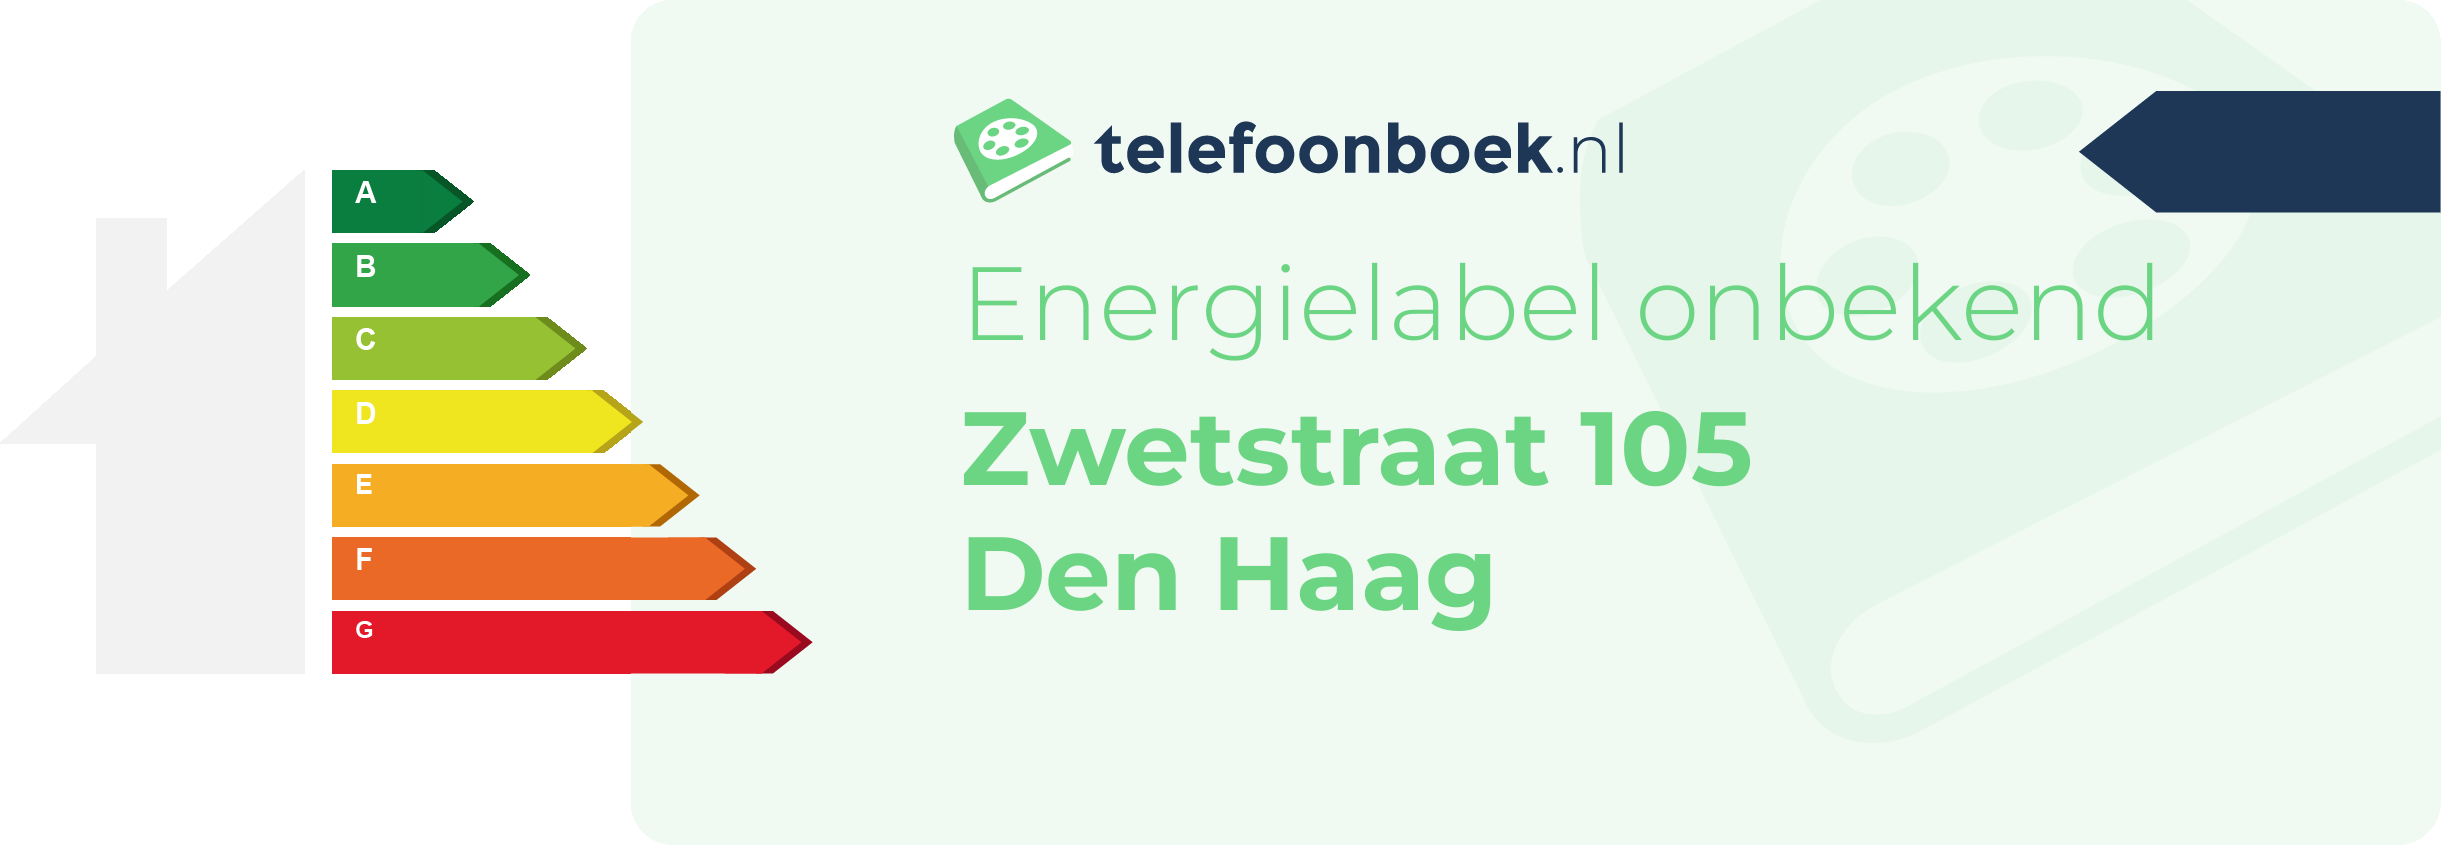 Energielabel Zwetstraat 105 Den Haag